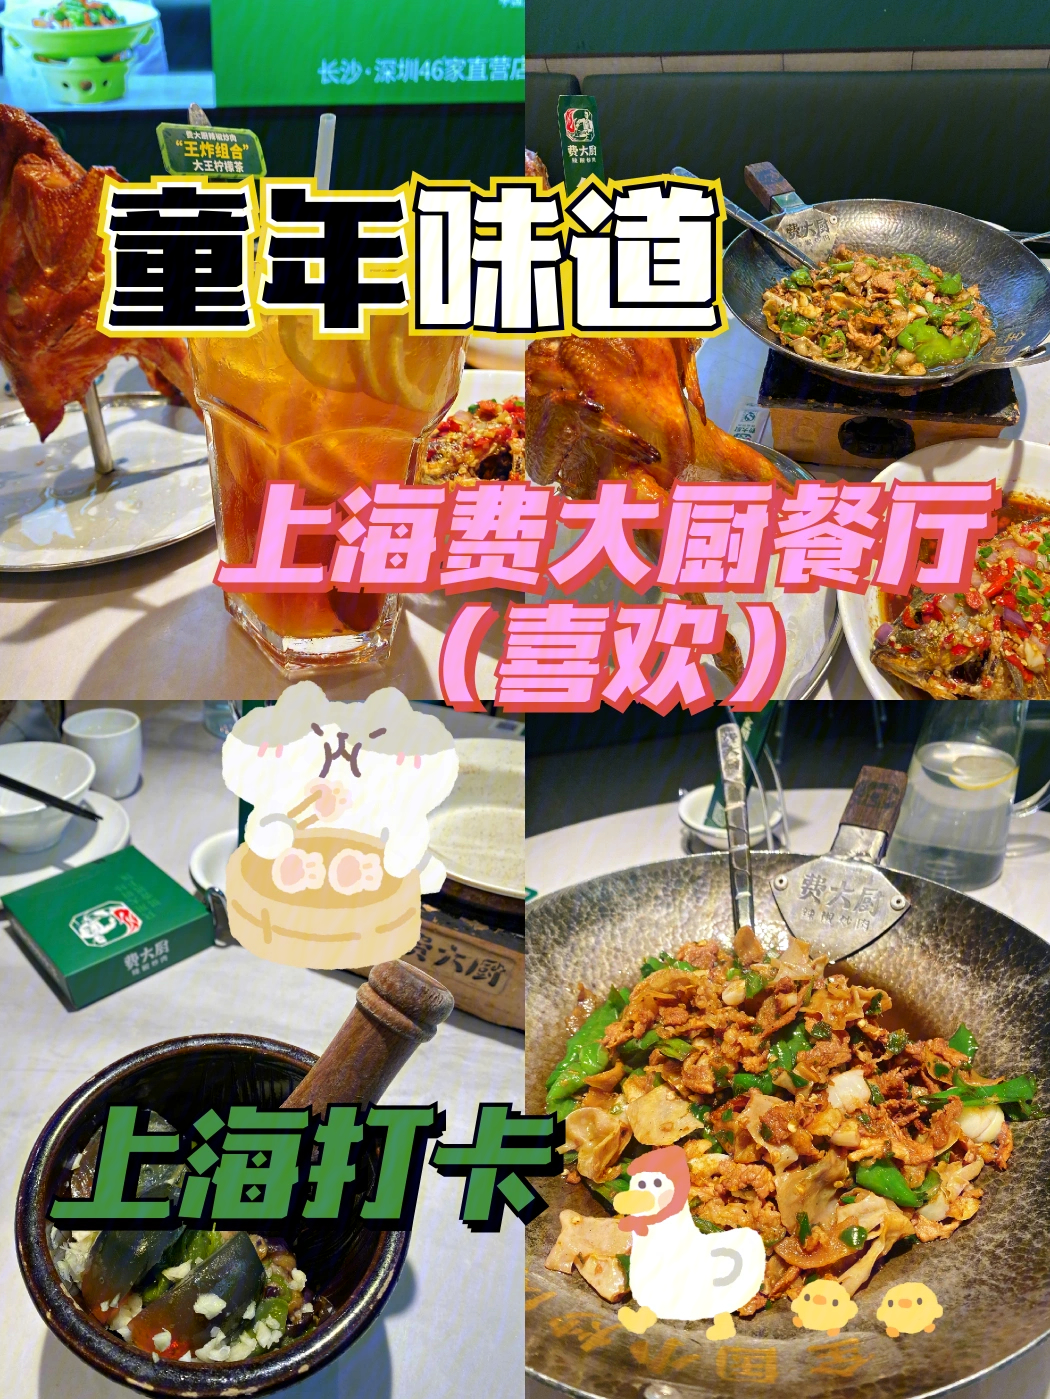 上海美食分享吃货必吃辣椒炒肉味道超赞